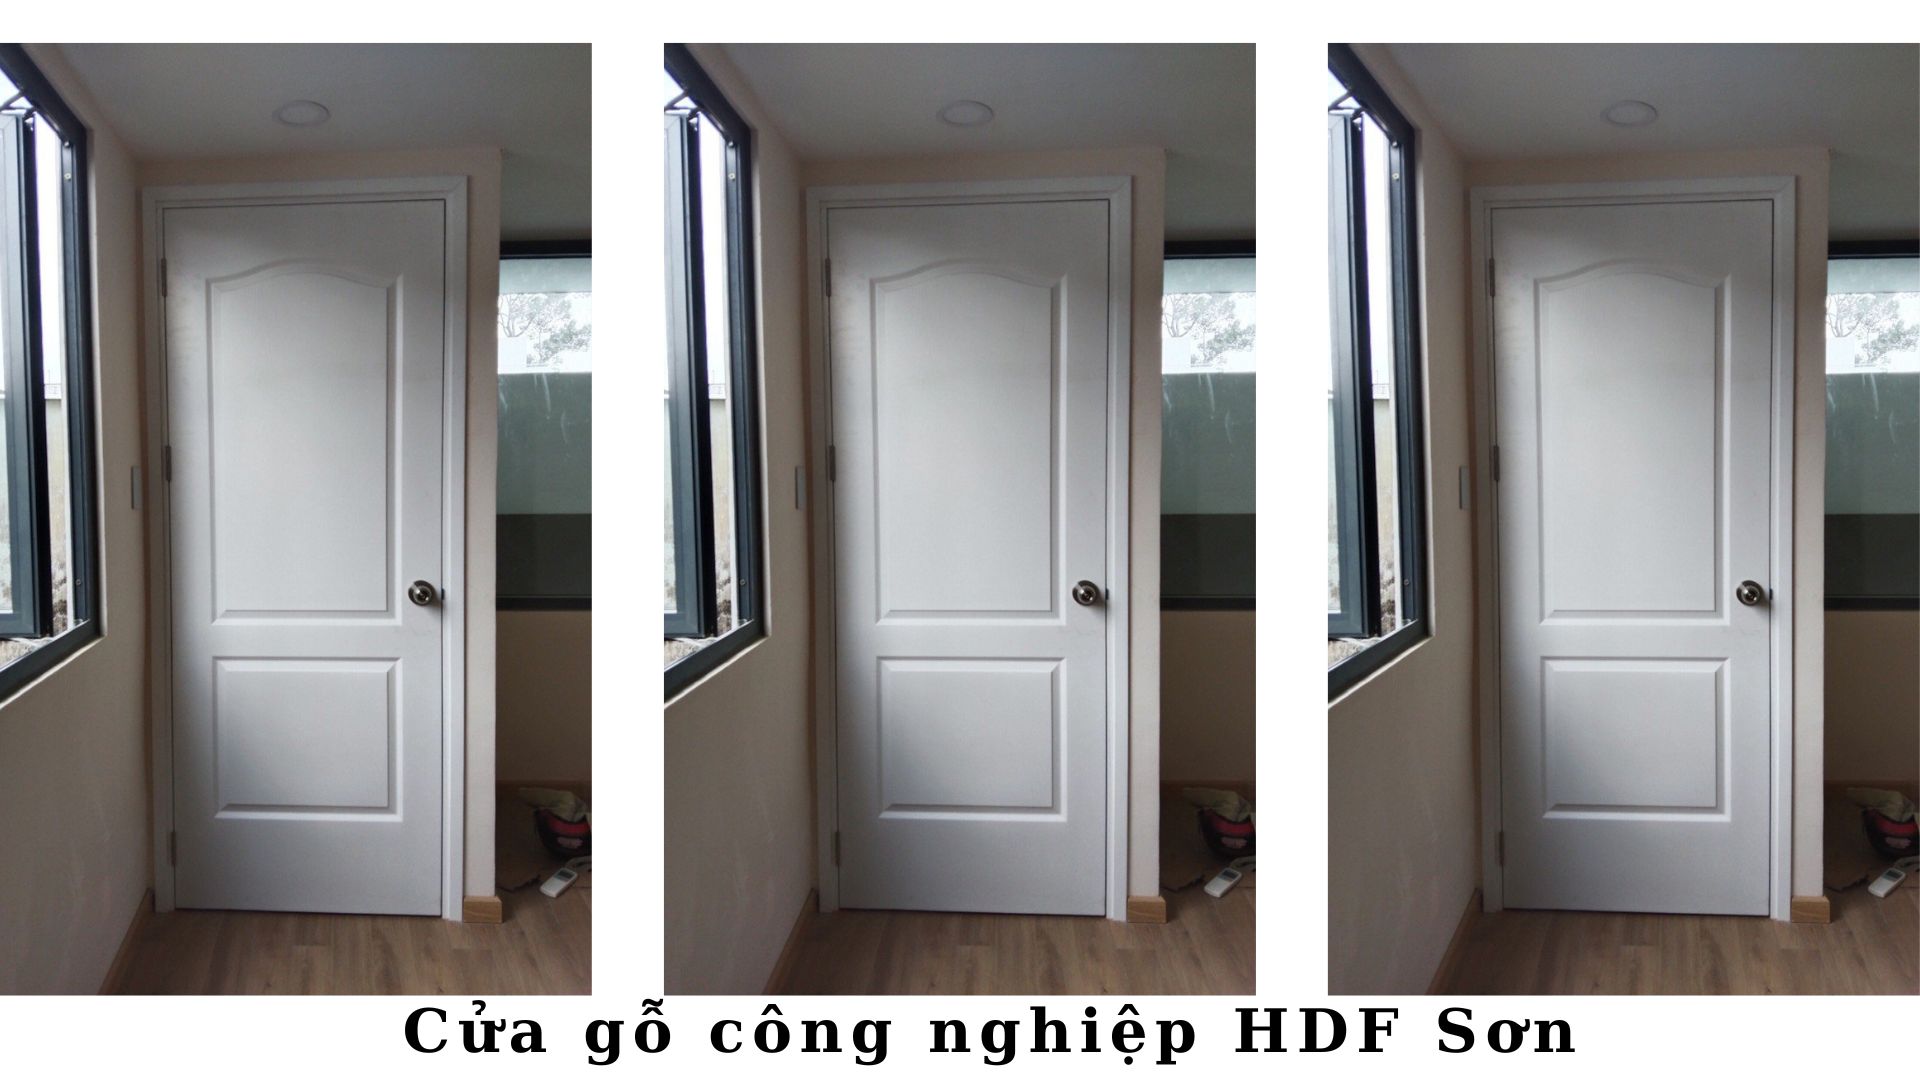 Báo giá cửa gỗ HDF tại TP.HCM - Cửa gỗ phòng ngủ